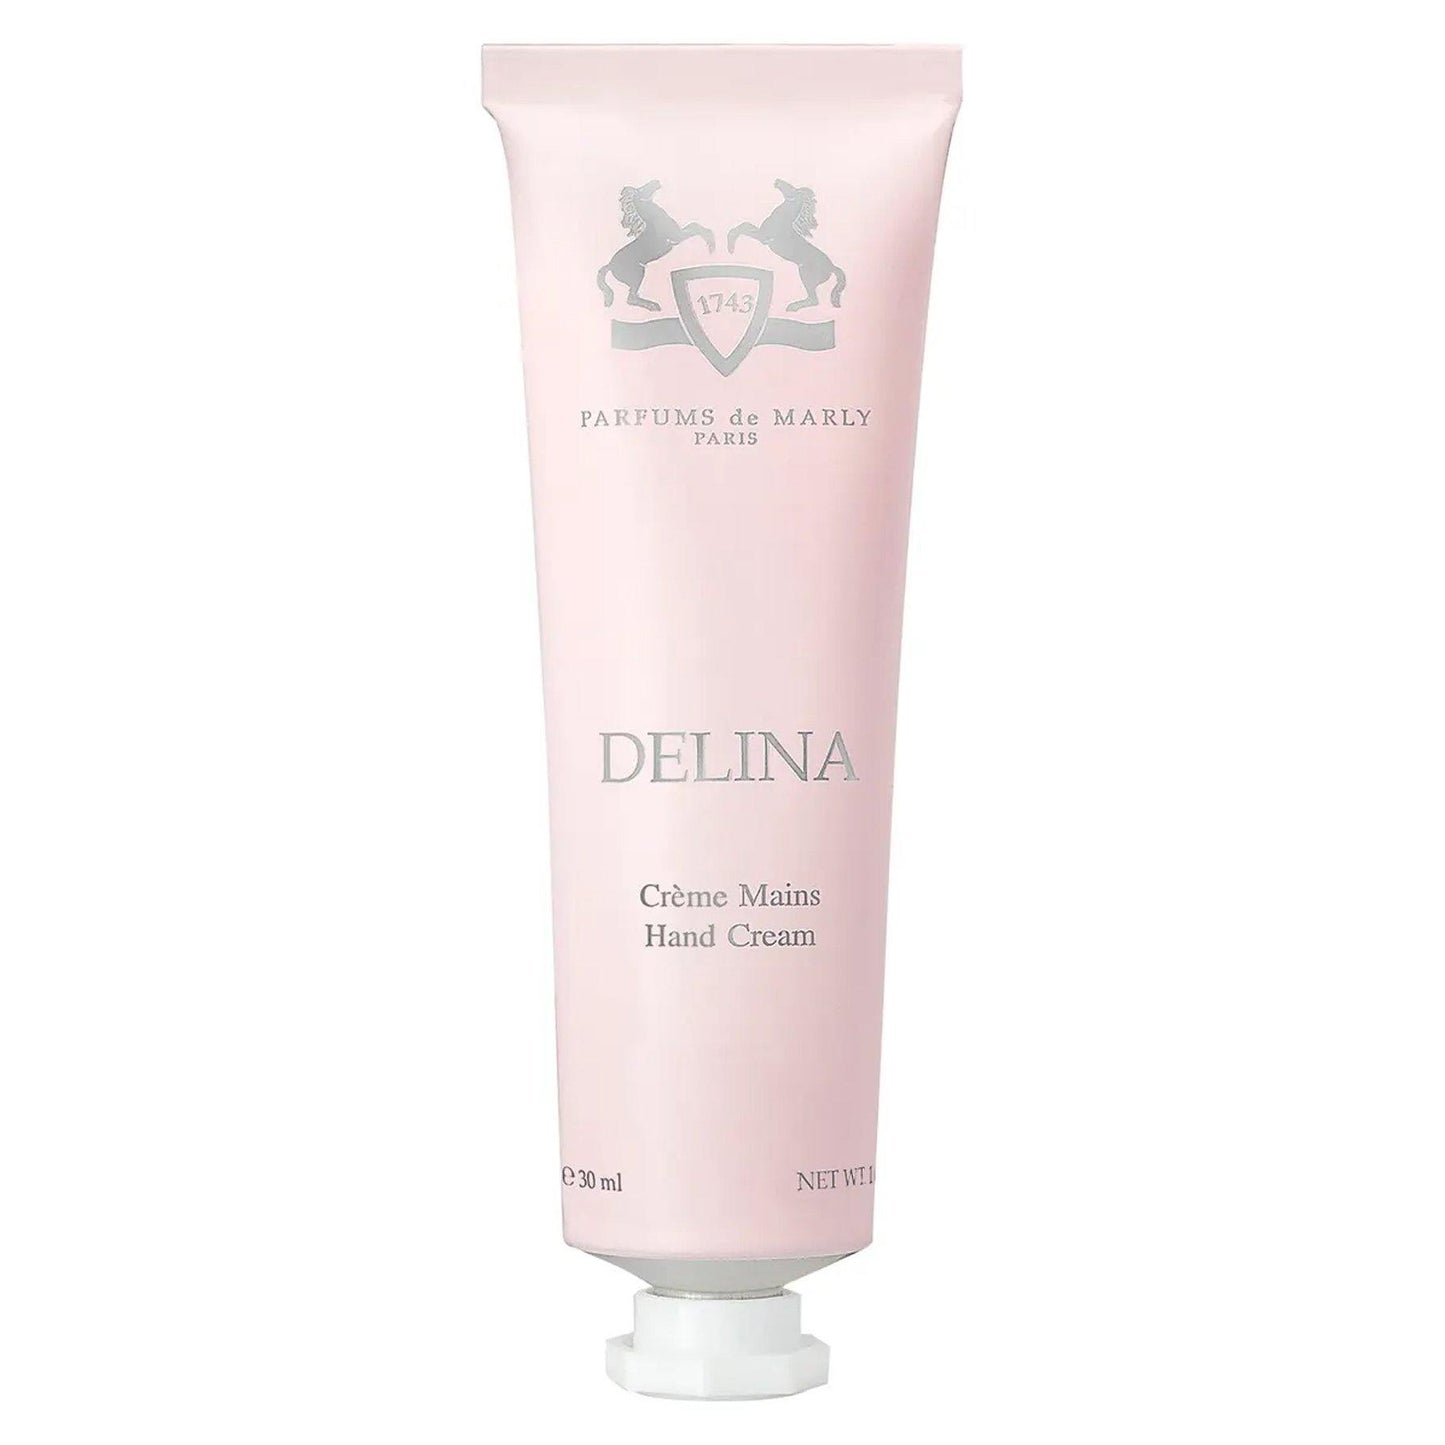 Delina Hand Cream 1 oz. - Cosmos Boutique New Jersey